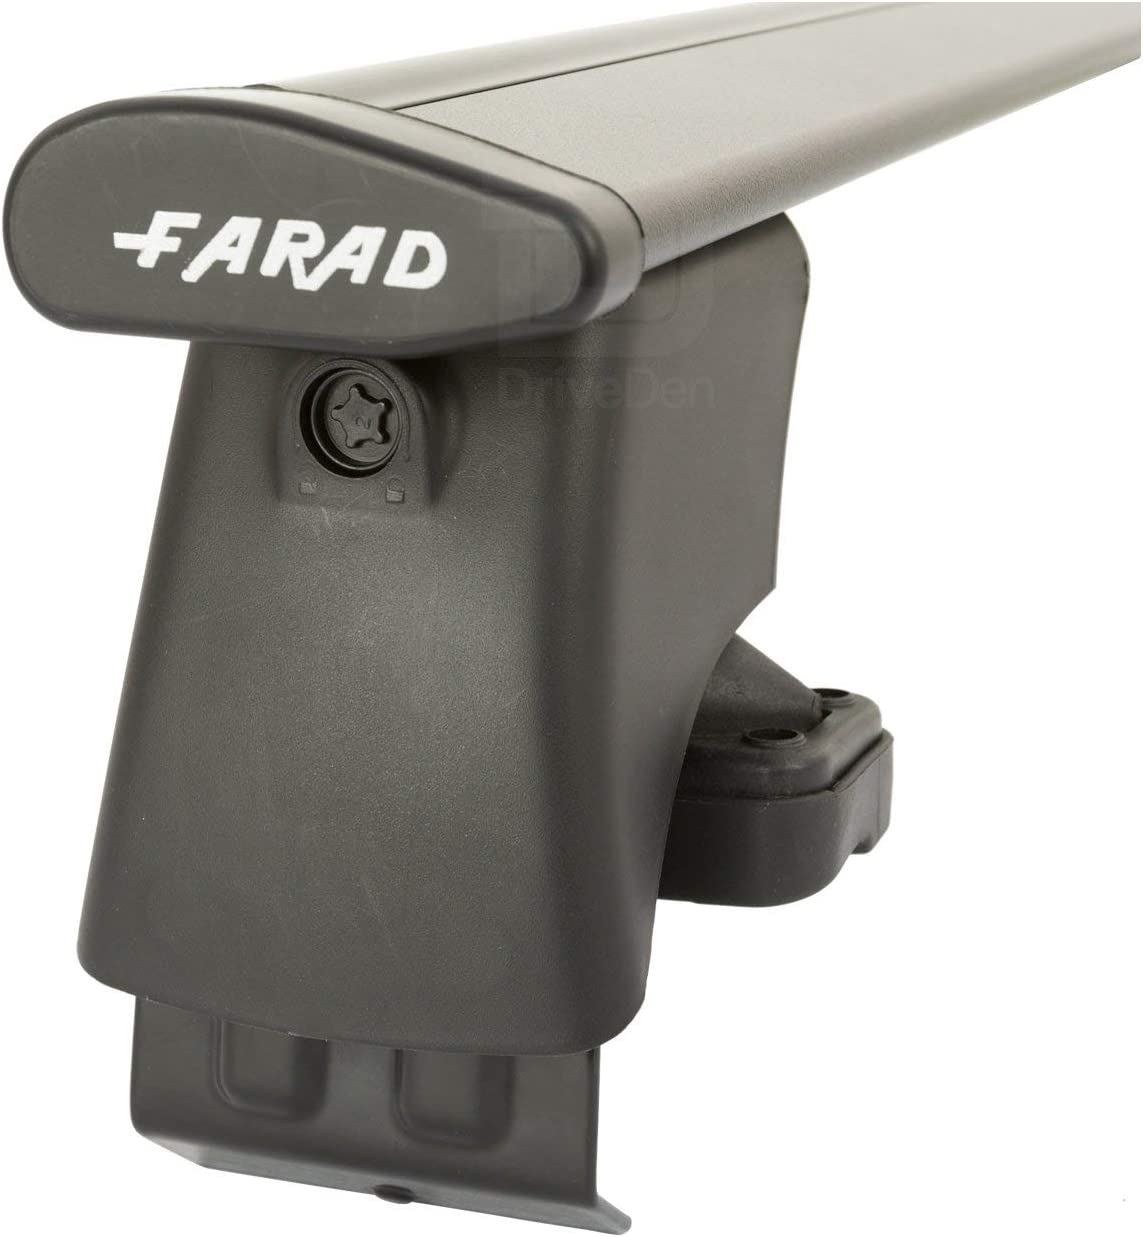 FARAD-Kit H2 per barre portatutto - Seat Altea 2004-2015 (senza corrimano)